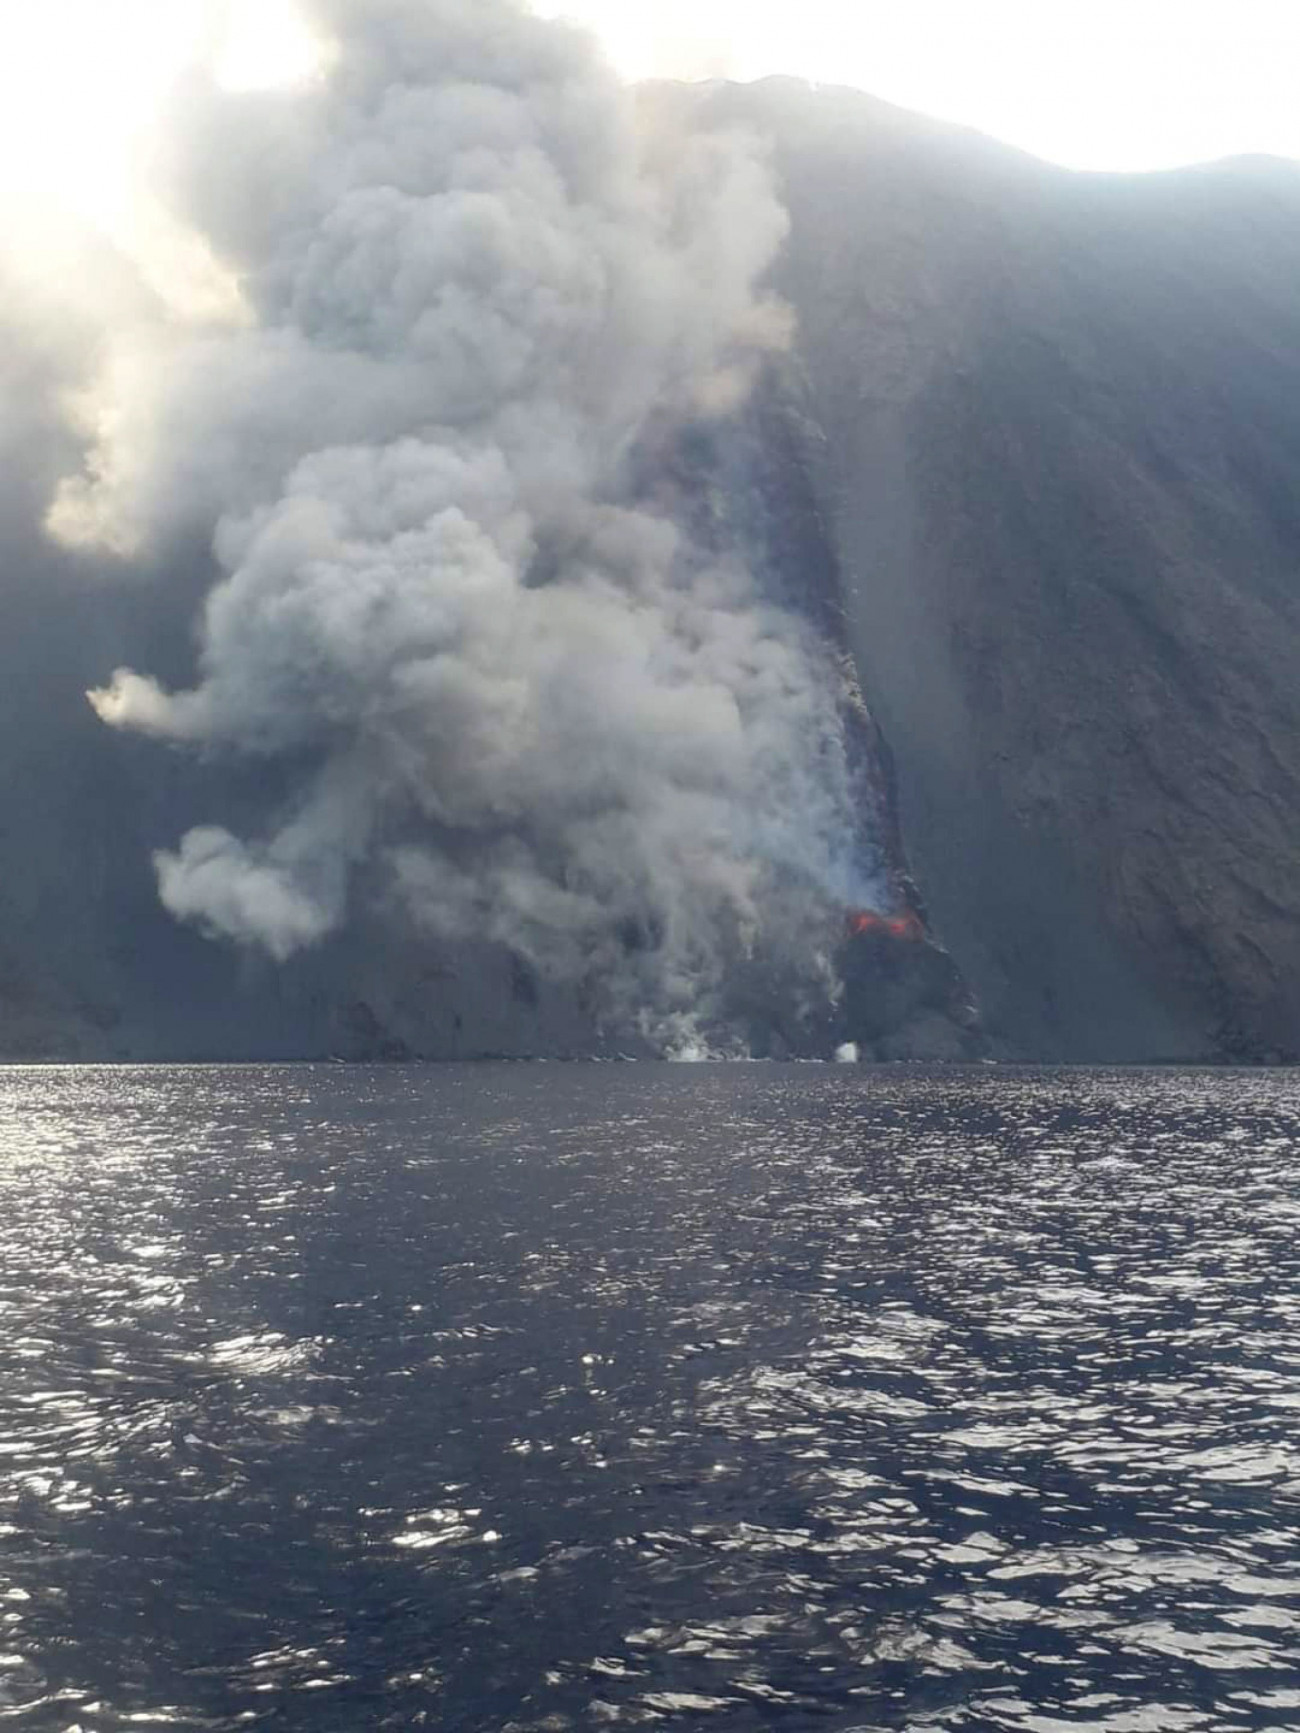 Hamufelhőt lövell ki a Stromboli tűzhányó a Szicíliától 60 km-re északra elterülő azonos nevű apró szigeten 2022. október 9-én.
Forrás: MTI/EPA/ANSA/Francesco Nuccio